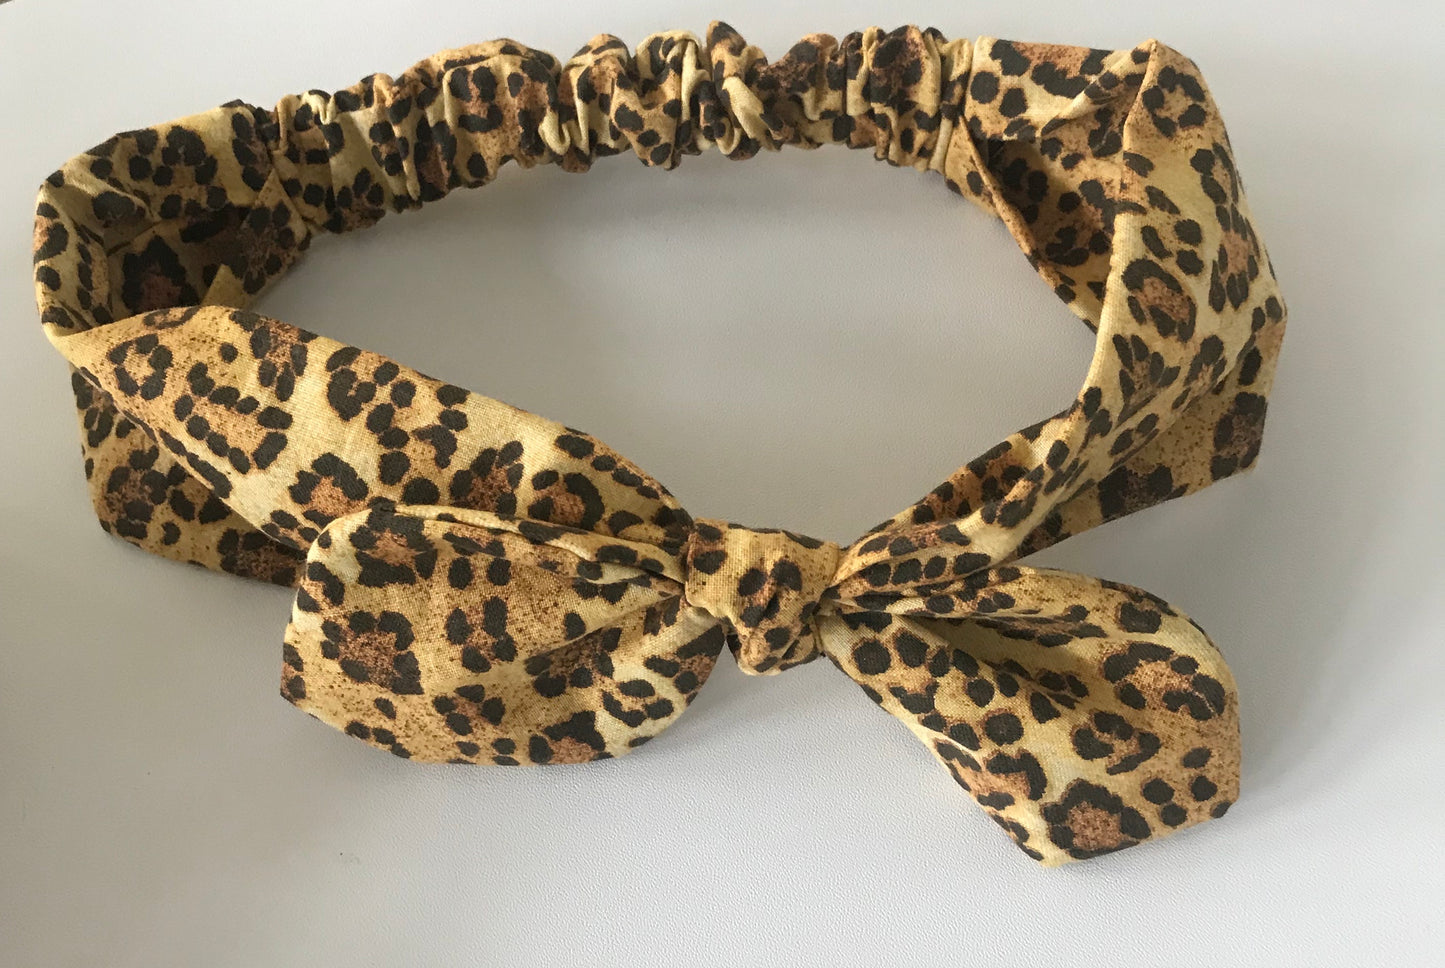 Cheetah Print Headband. Beautiful Retro Look.